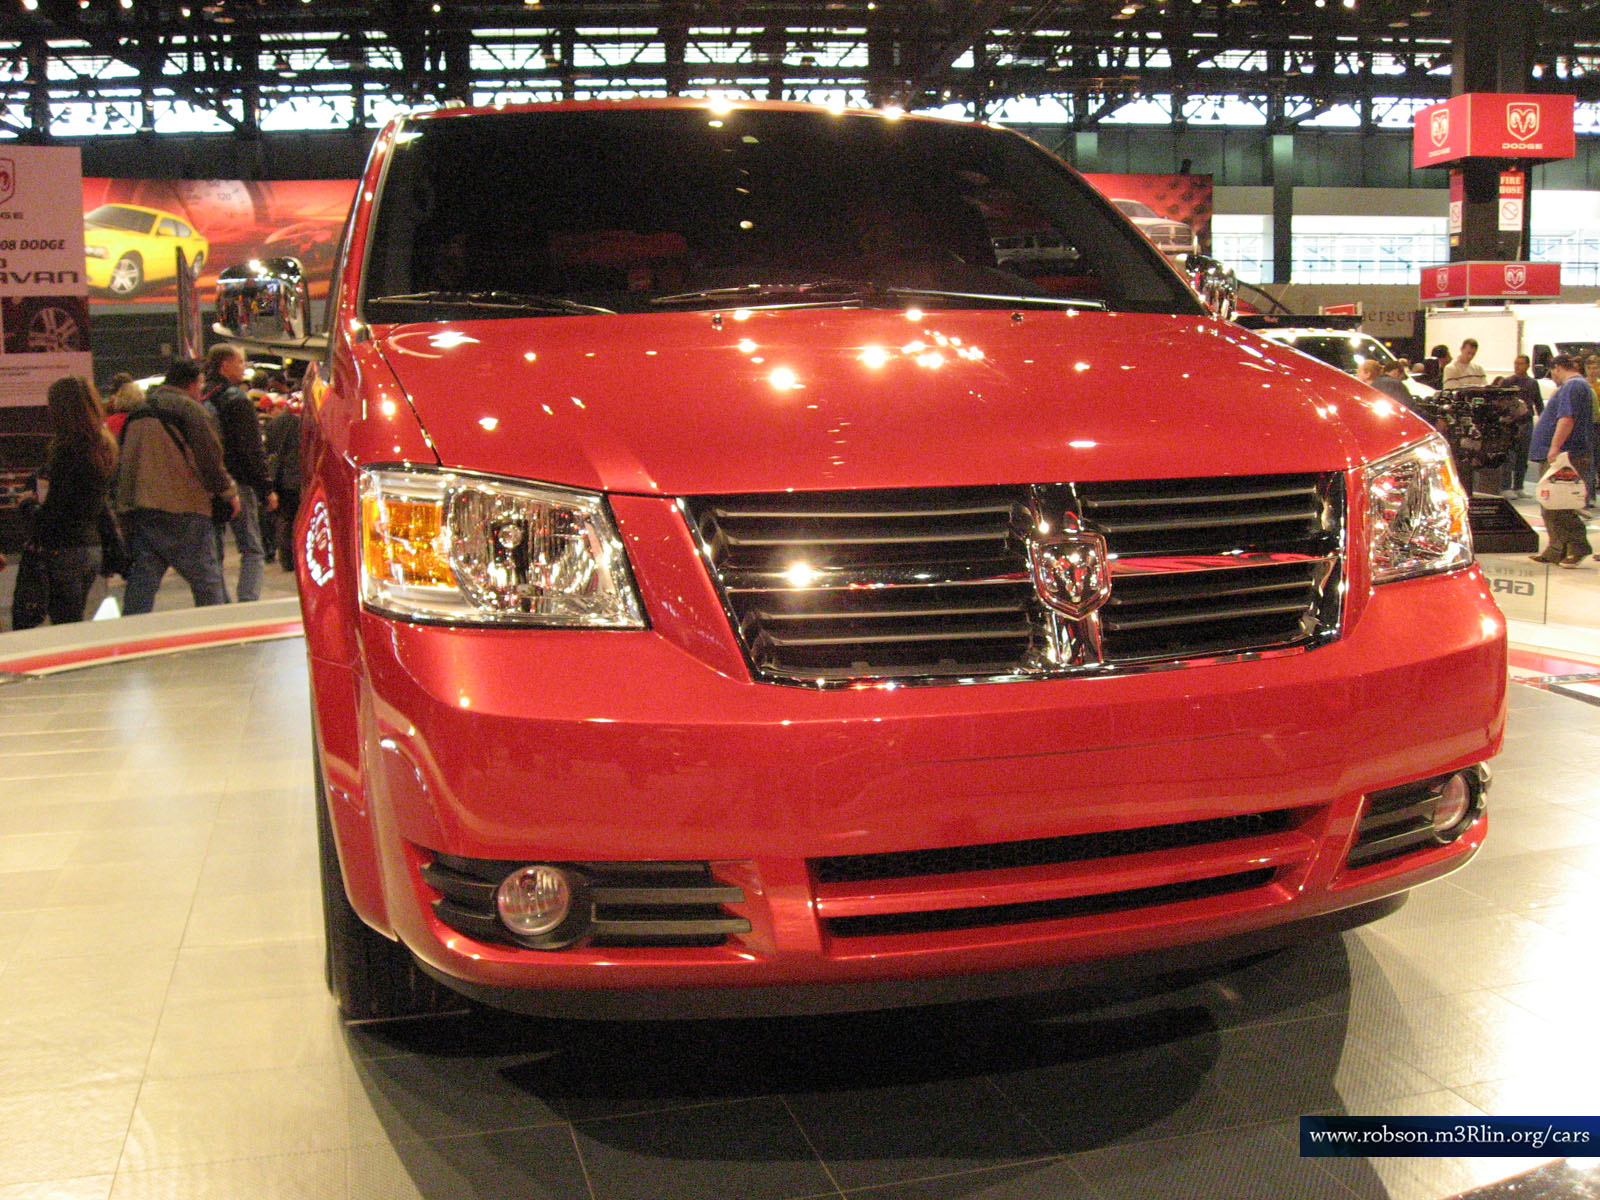 Dodge Caravan STX | Cars - Pictures & Wallpapers, Automotive News ...